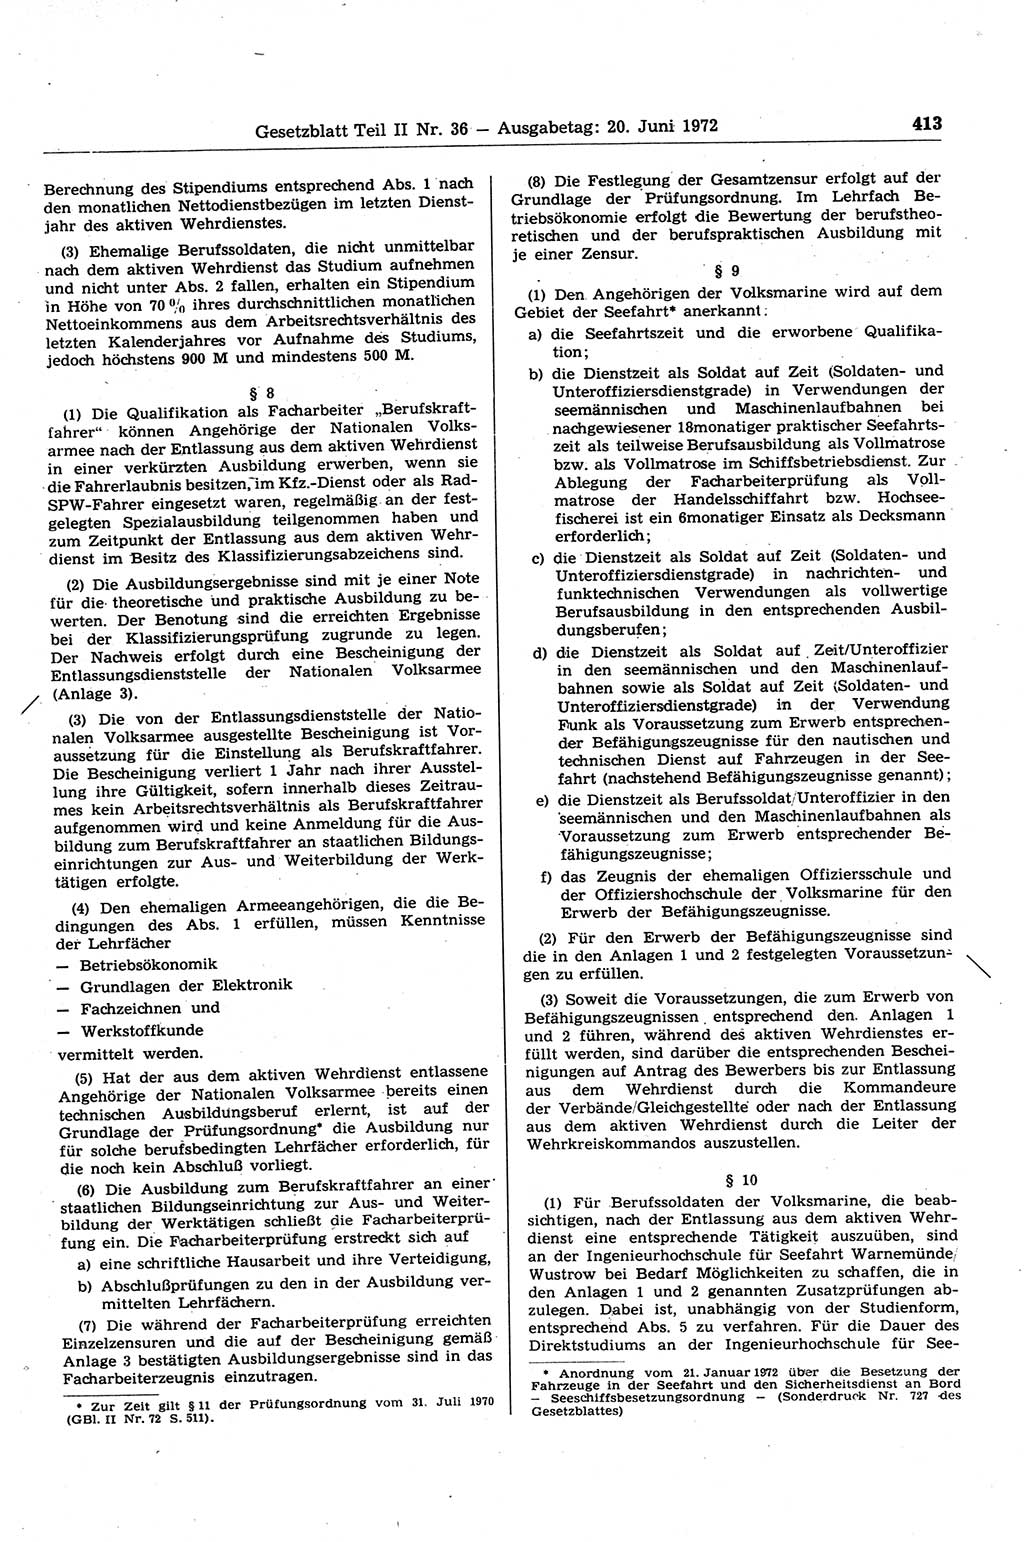 Gesetzblatt (GBl.) der Deutschen Demokratischen Republik (DDR) Teil ⅠⅠ 1972, Seite 413 (GBl. DDR ⅠⅠ 1972, S. 413)